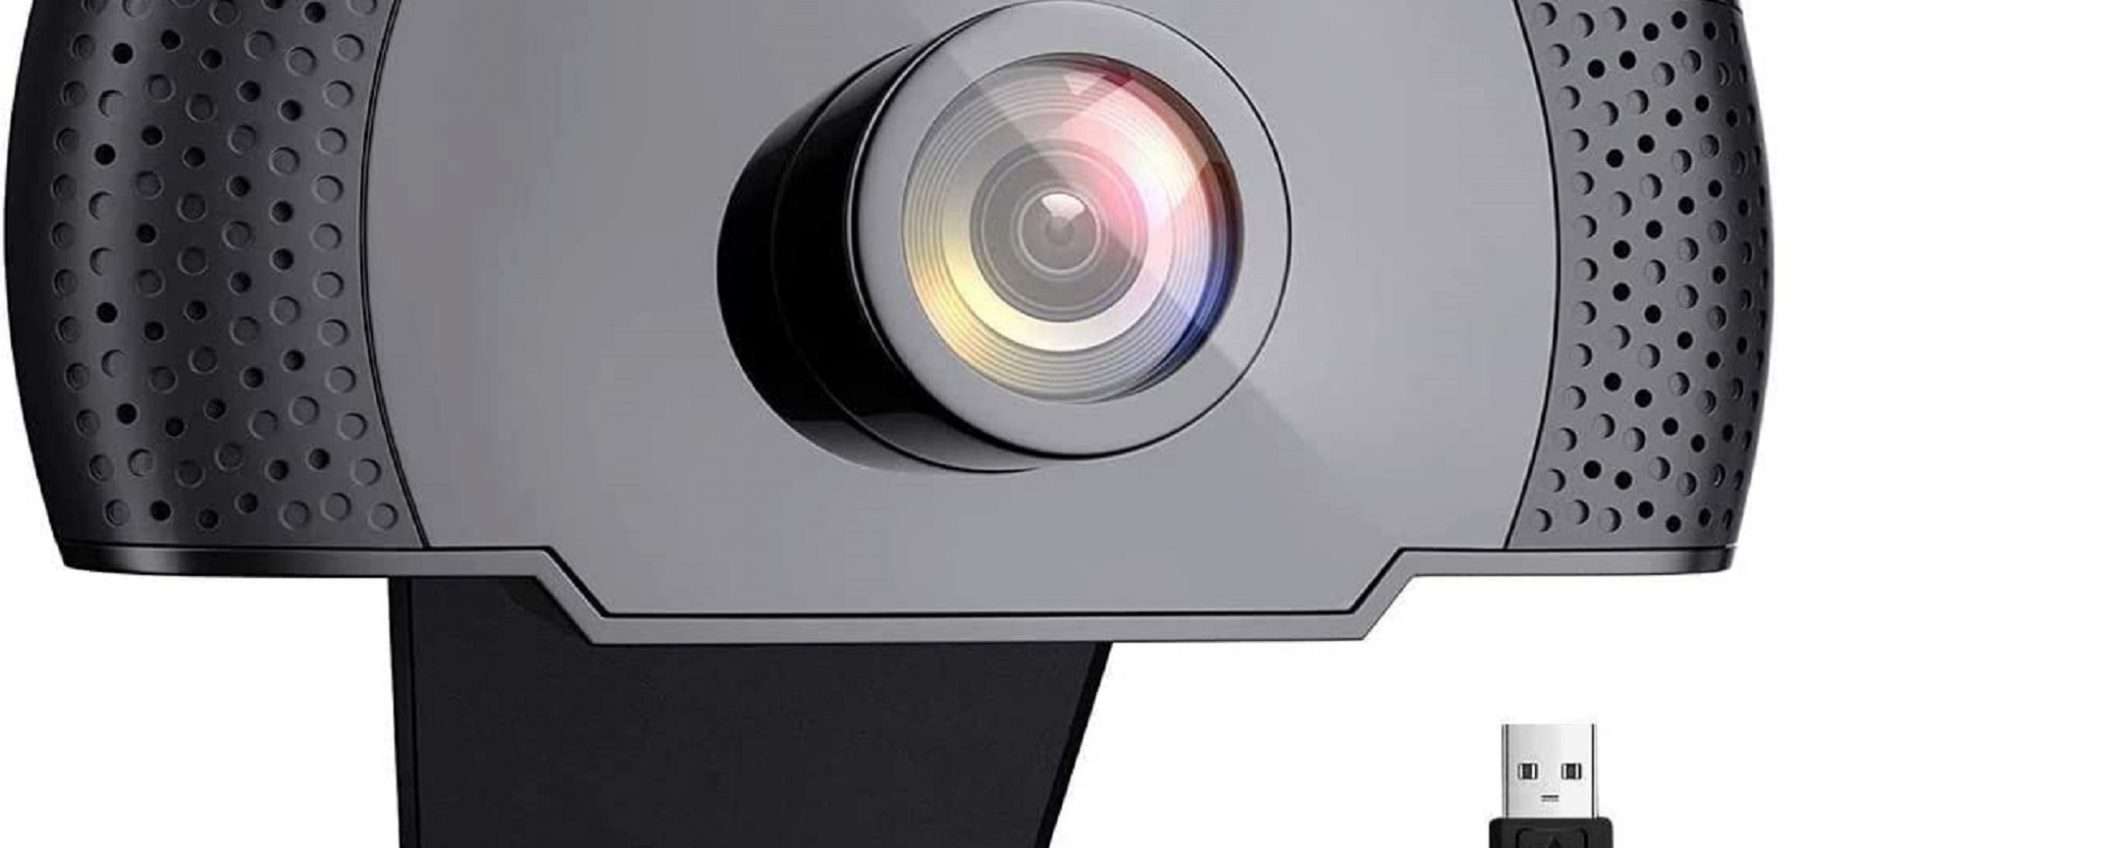 Webcam FullHD in offerta a tempo: solo 19,99€